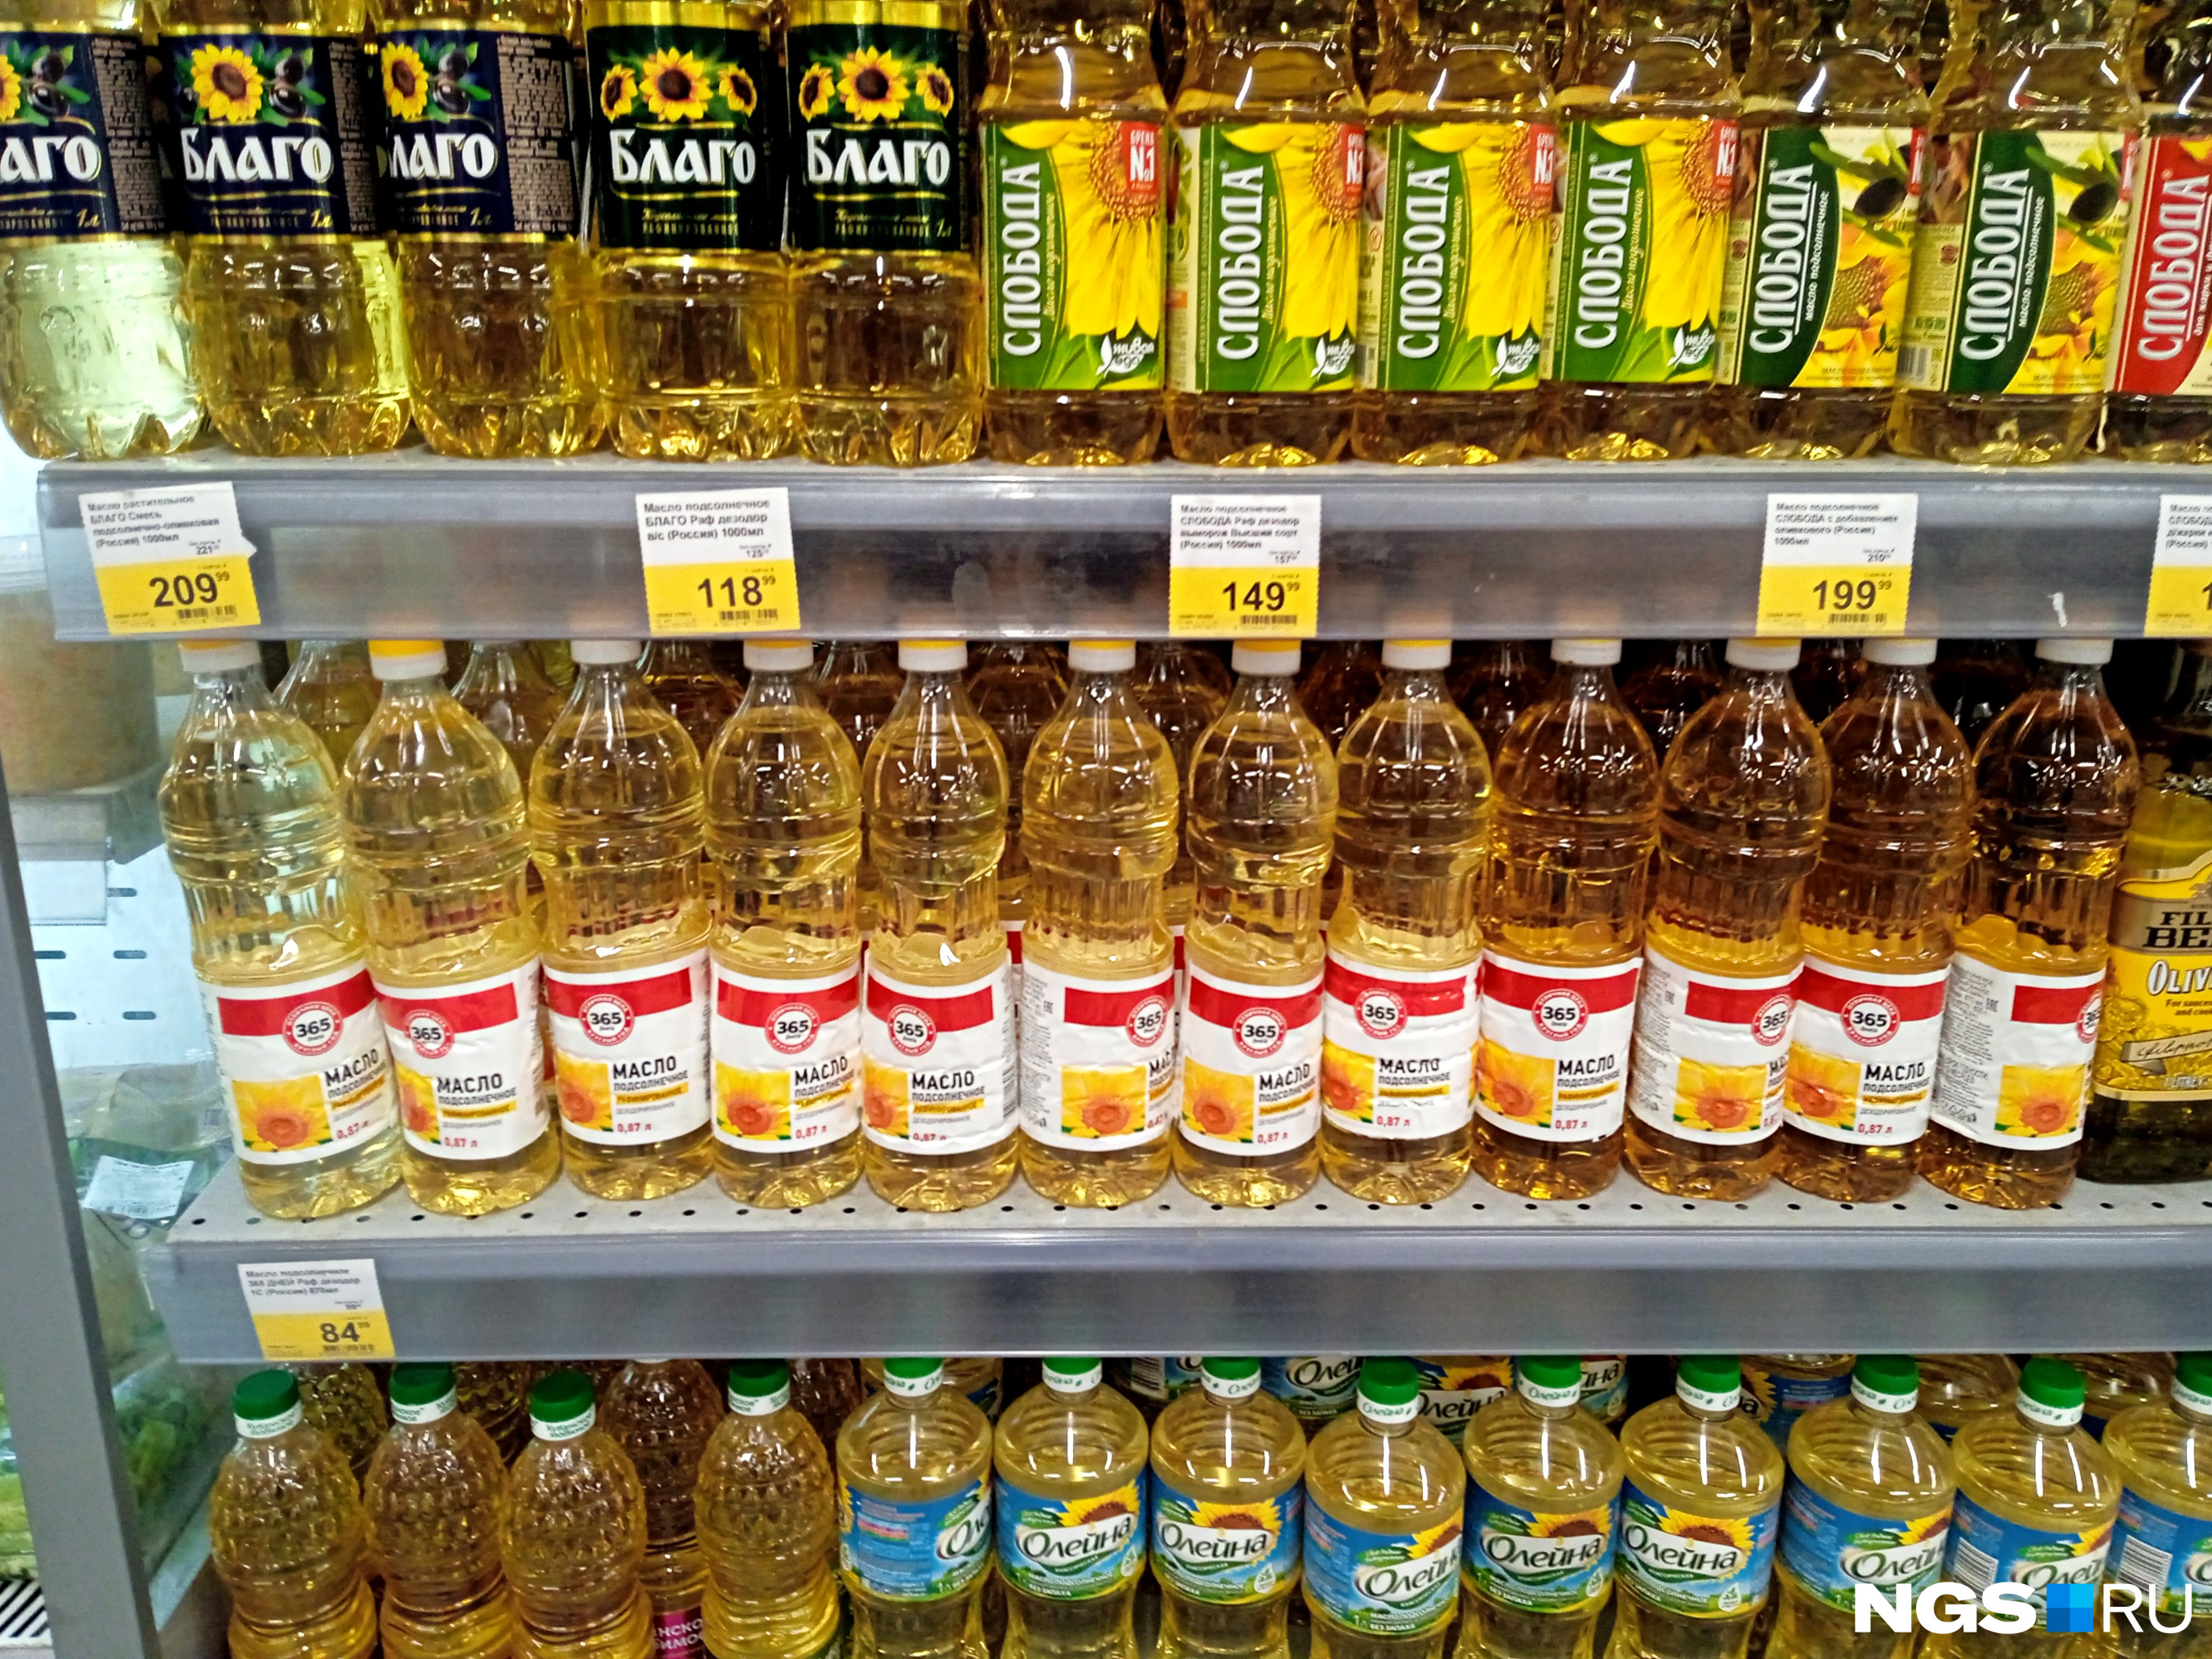 Одинаковые на вид бутылки растительного масла могут вмещать от литра до 0,8 литра